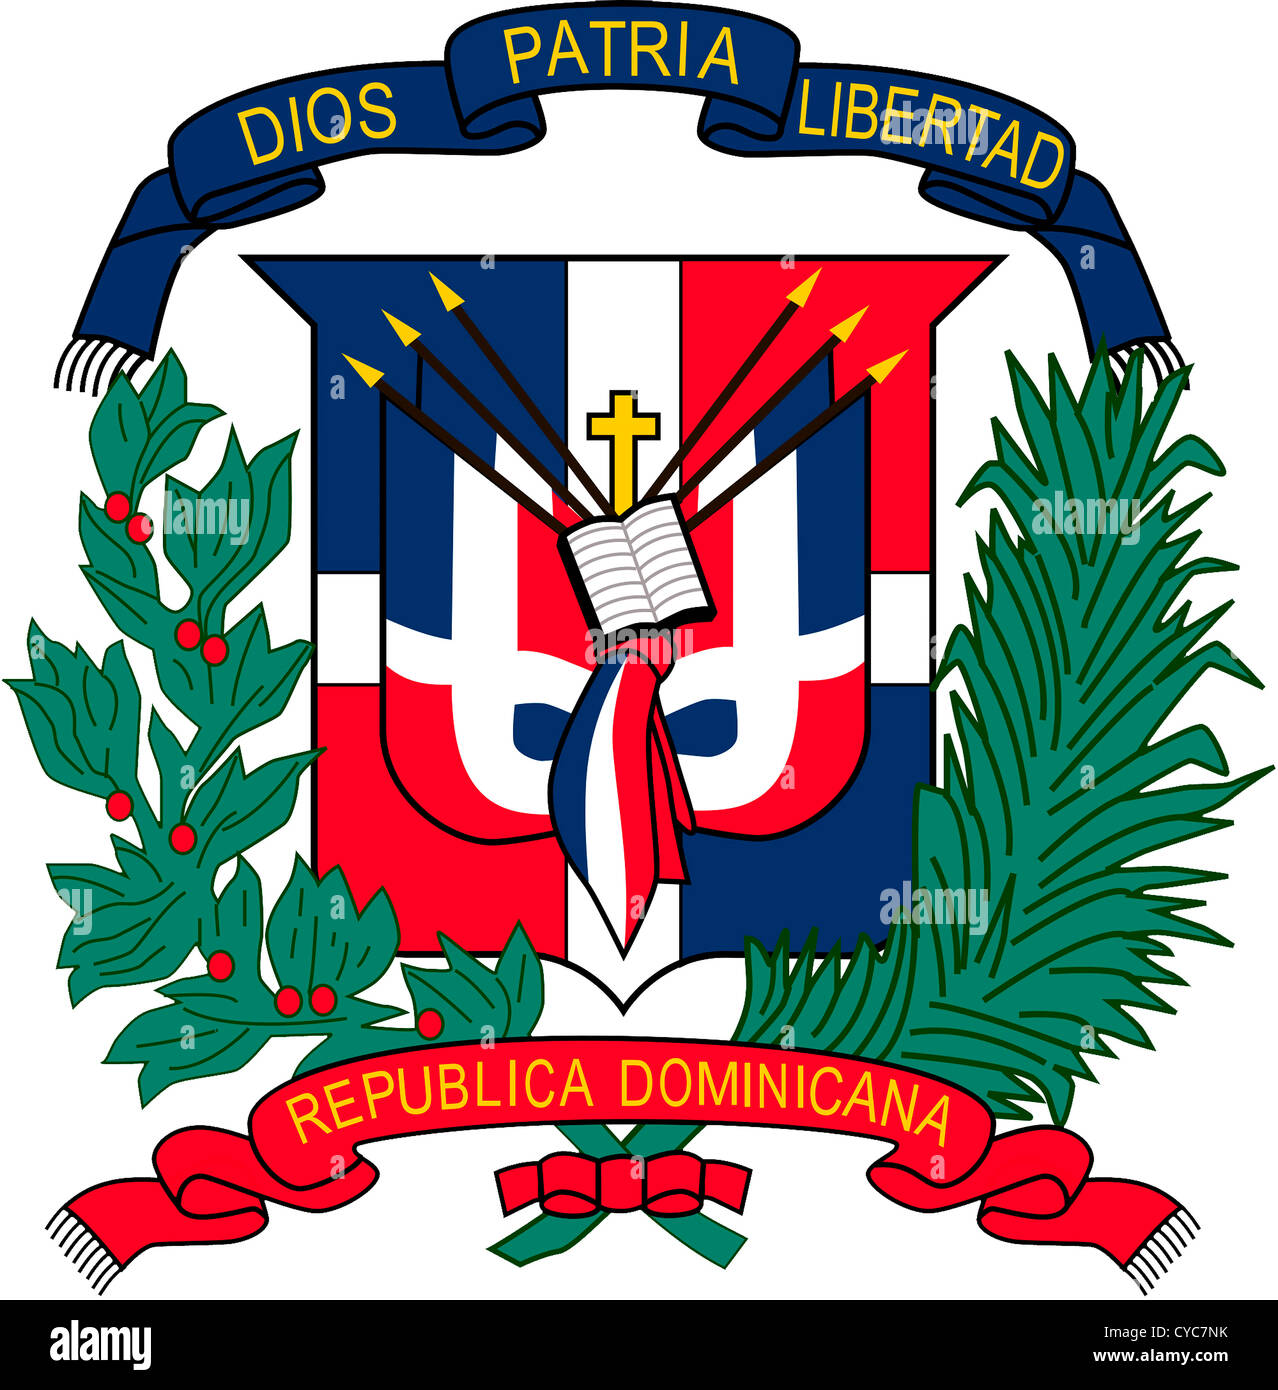 Escudo de armas de la República Dominicana. Foto de stock